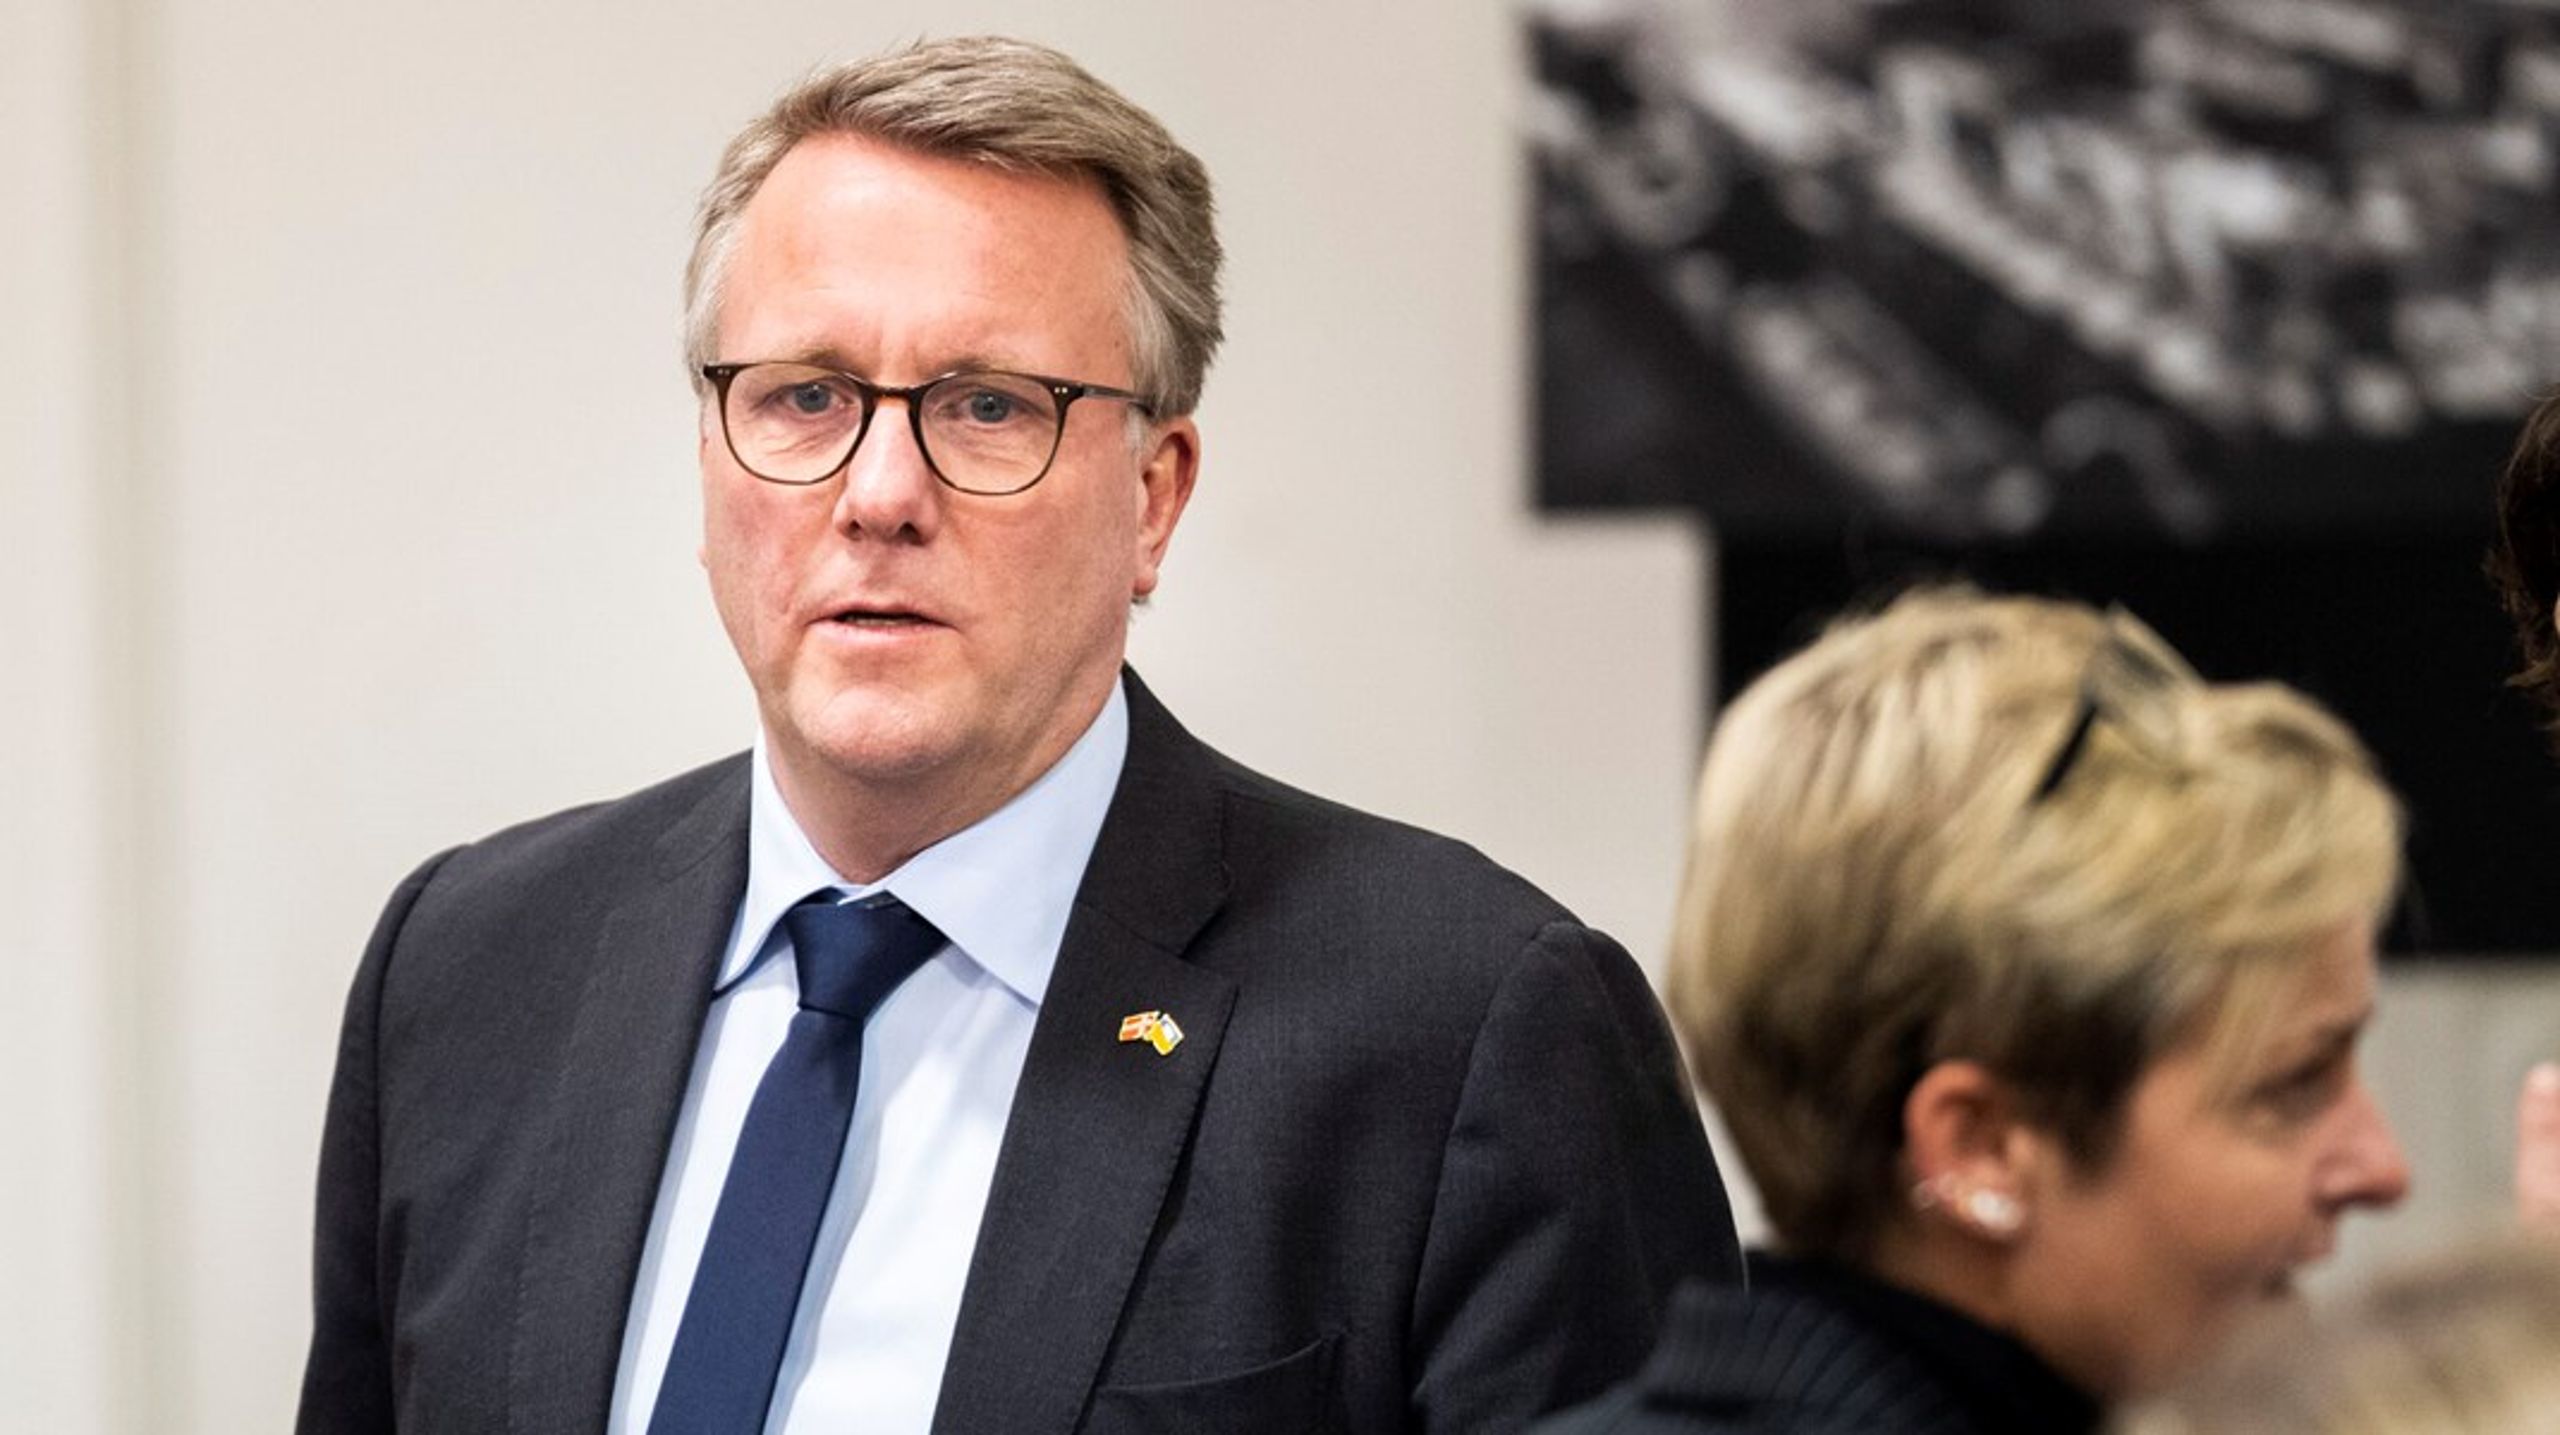 Vikarierende finansminister Morten Bødskov (S) vil ikke sende flere penge til EU.